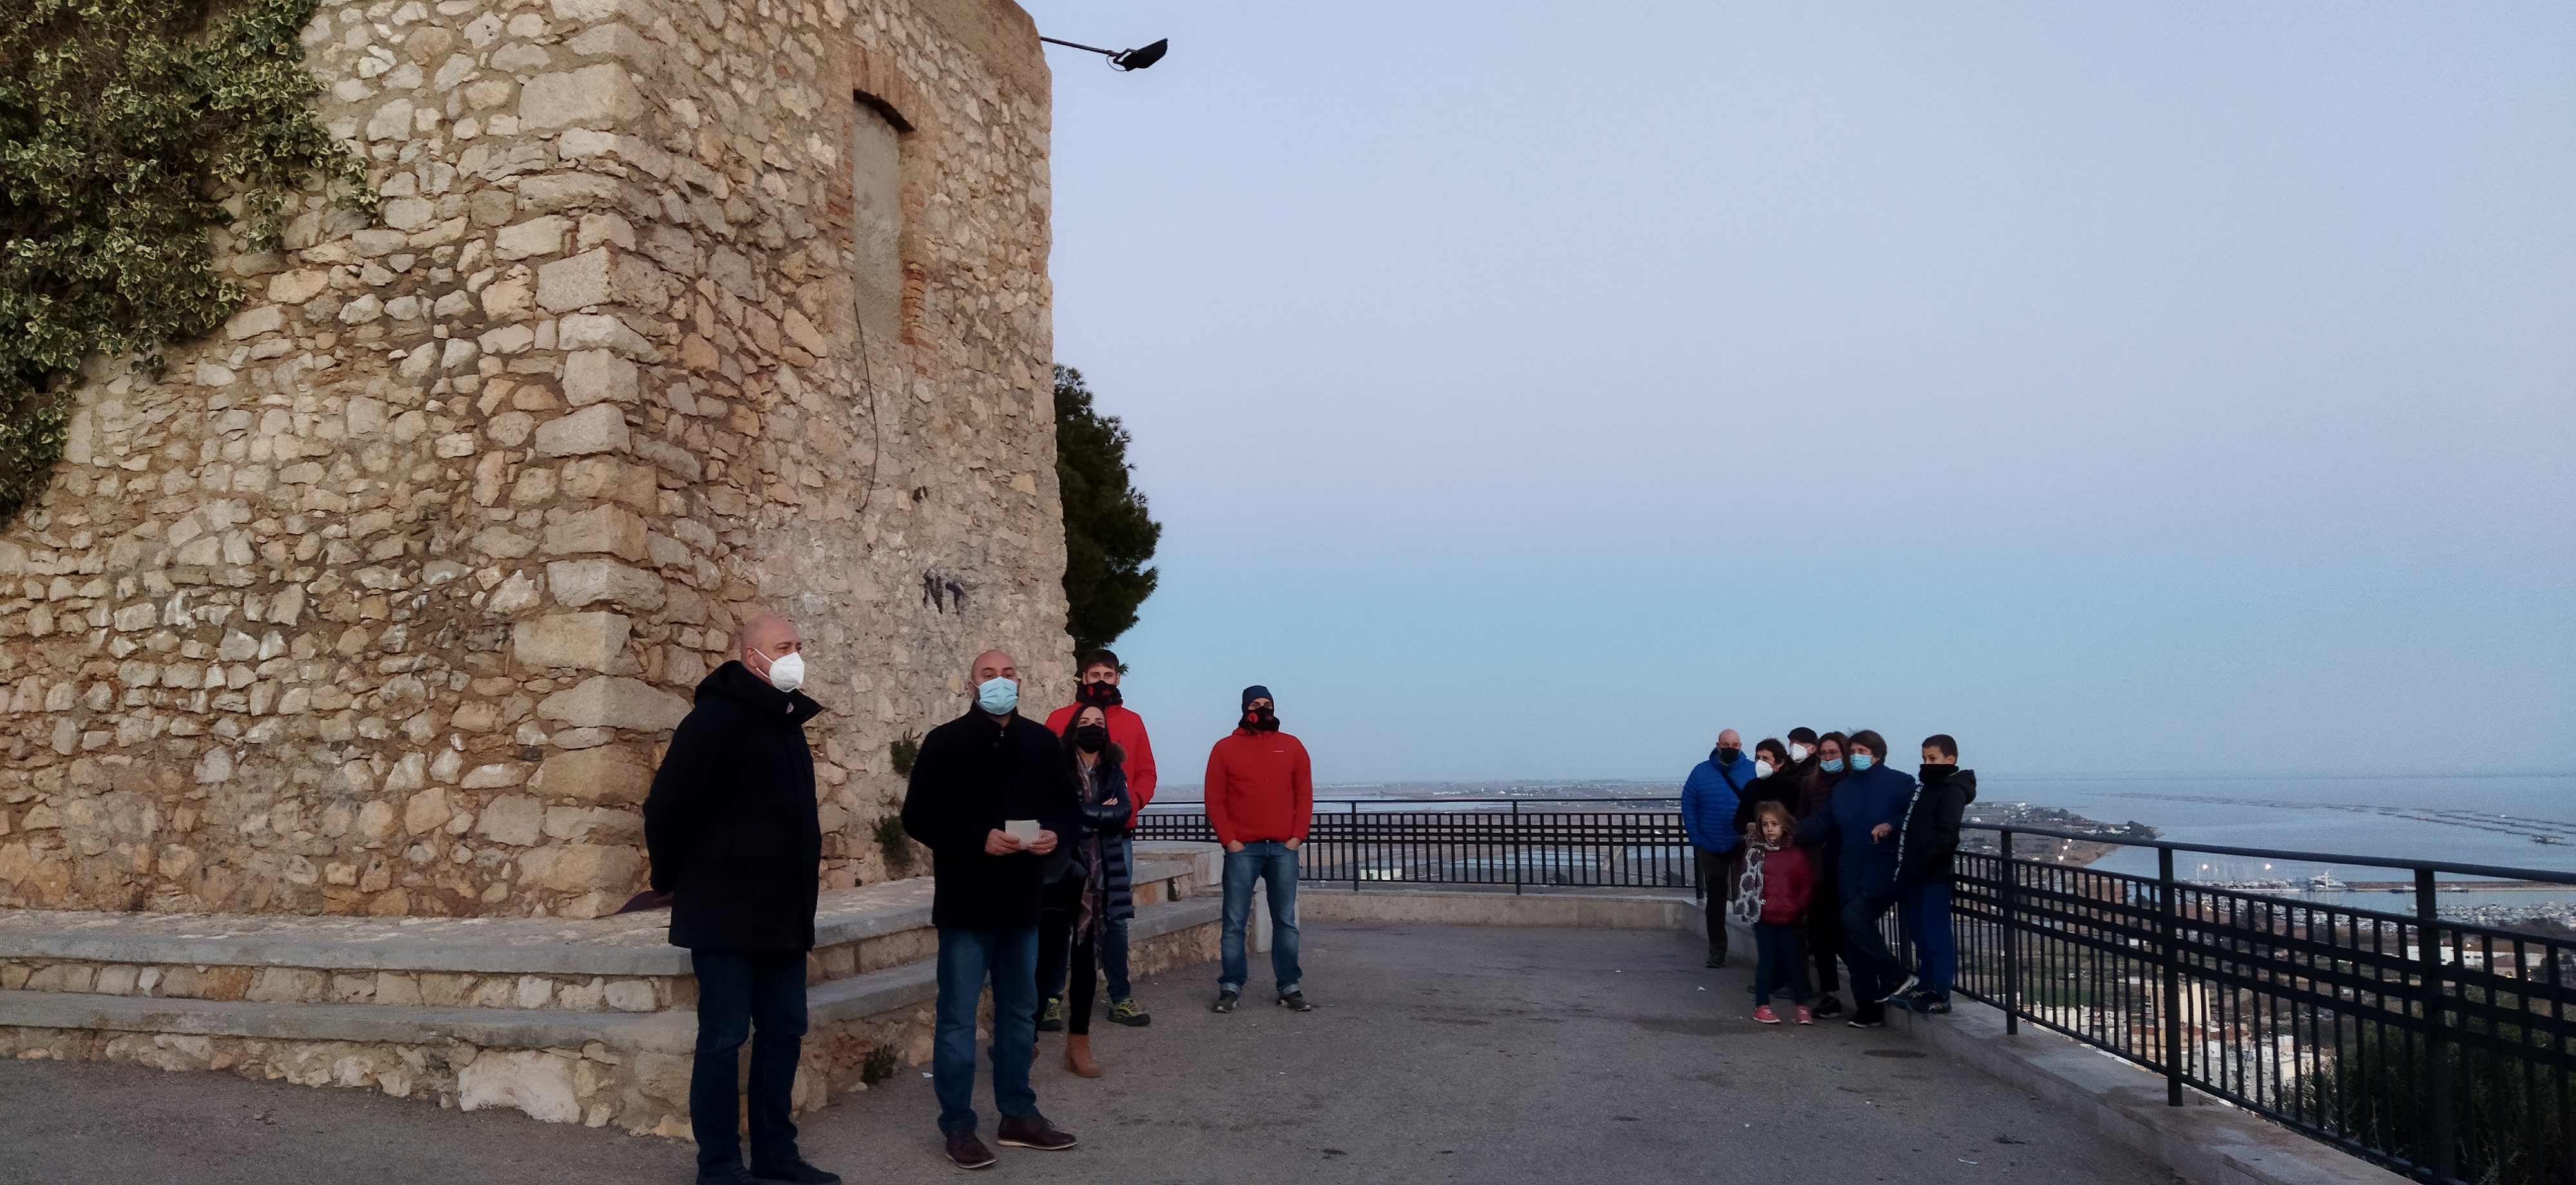 El delegat del Govern a les Terres de l'Ebre participa en l'Encesa de torres de la Mediterrània pels Drets humans